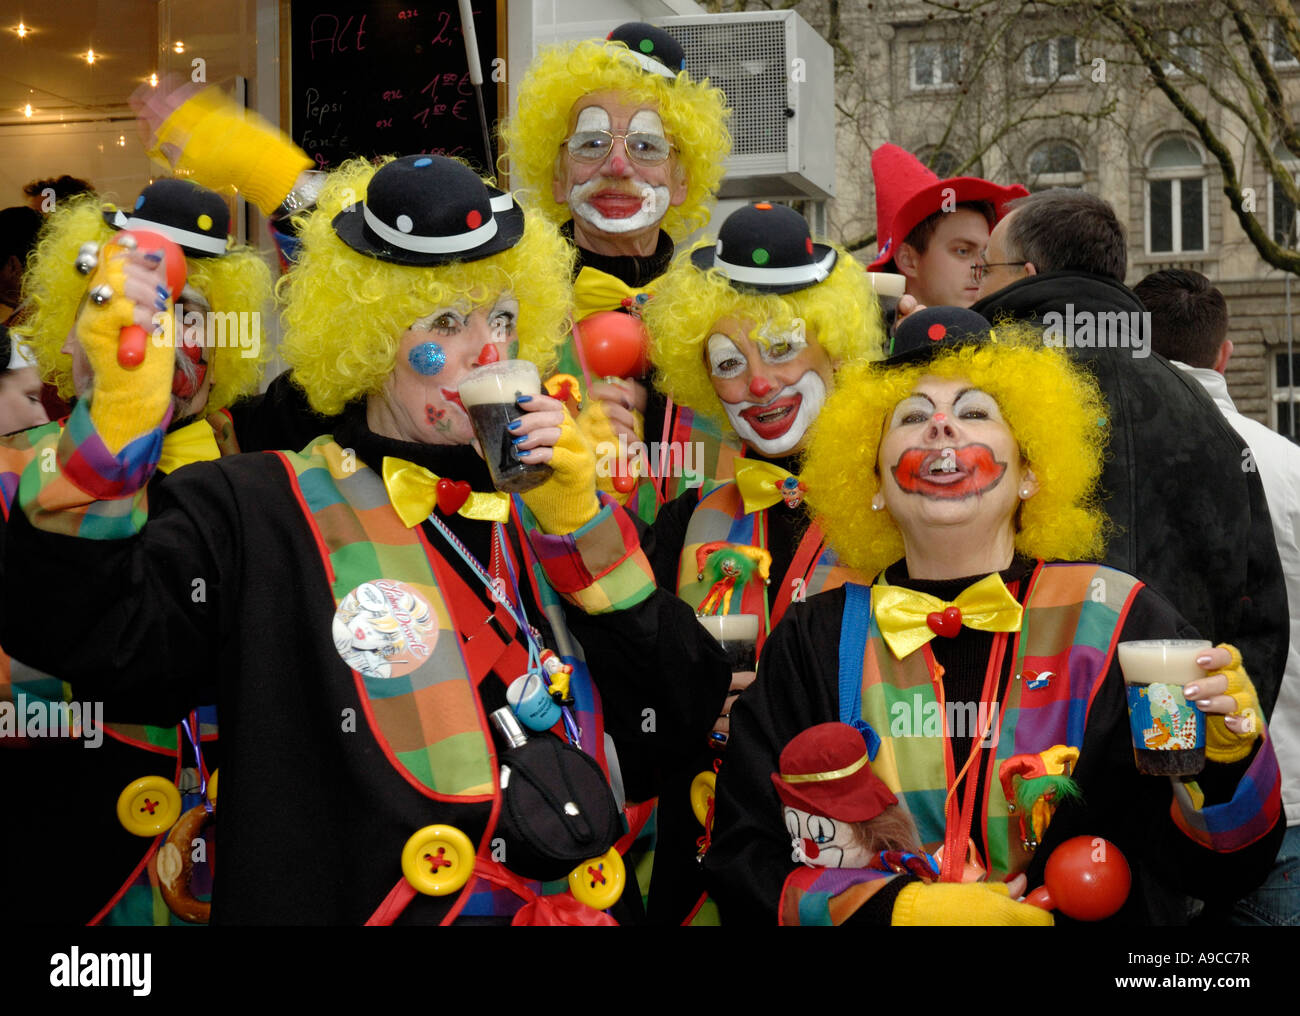 Gruppe von 5 Clowns mit gelb Perücken Altbier trinken und singen,  Düsseldorf Karneval 2007, Deutschland Stockfotografie - Alamy